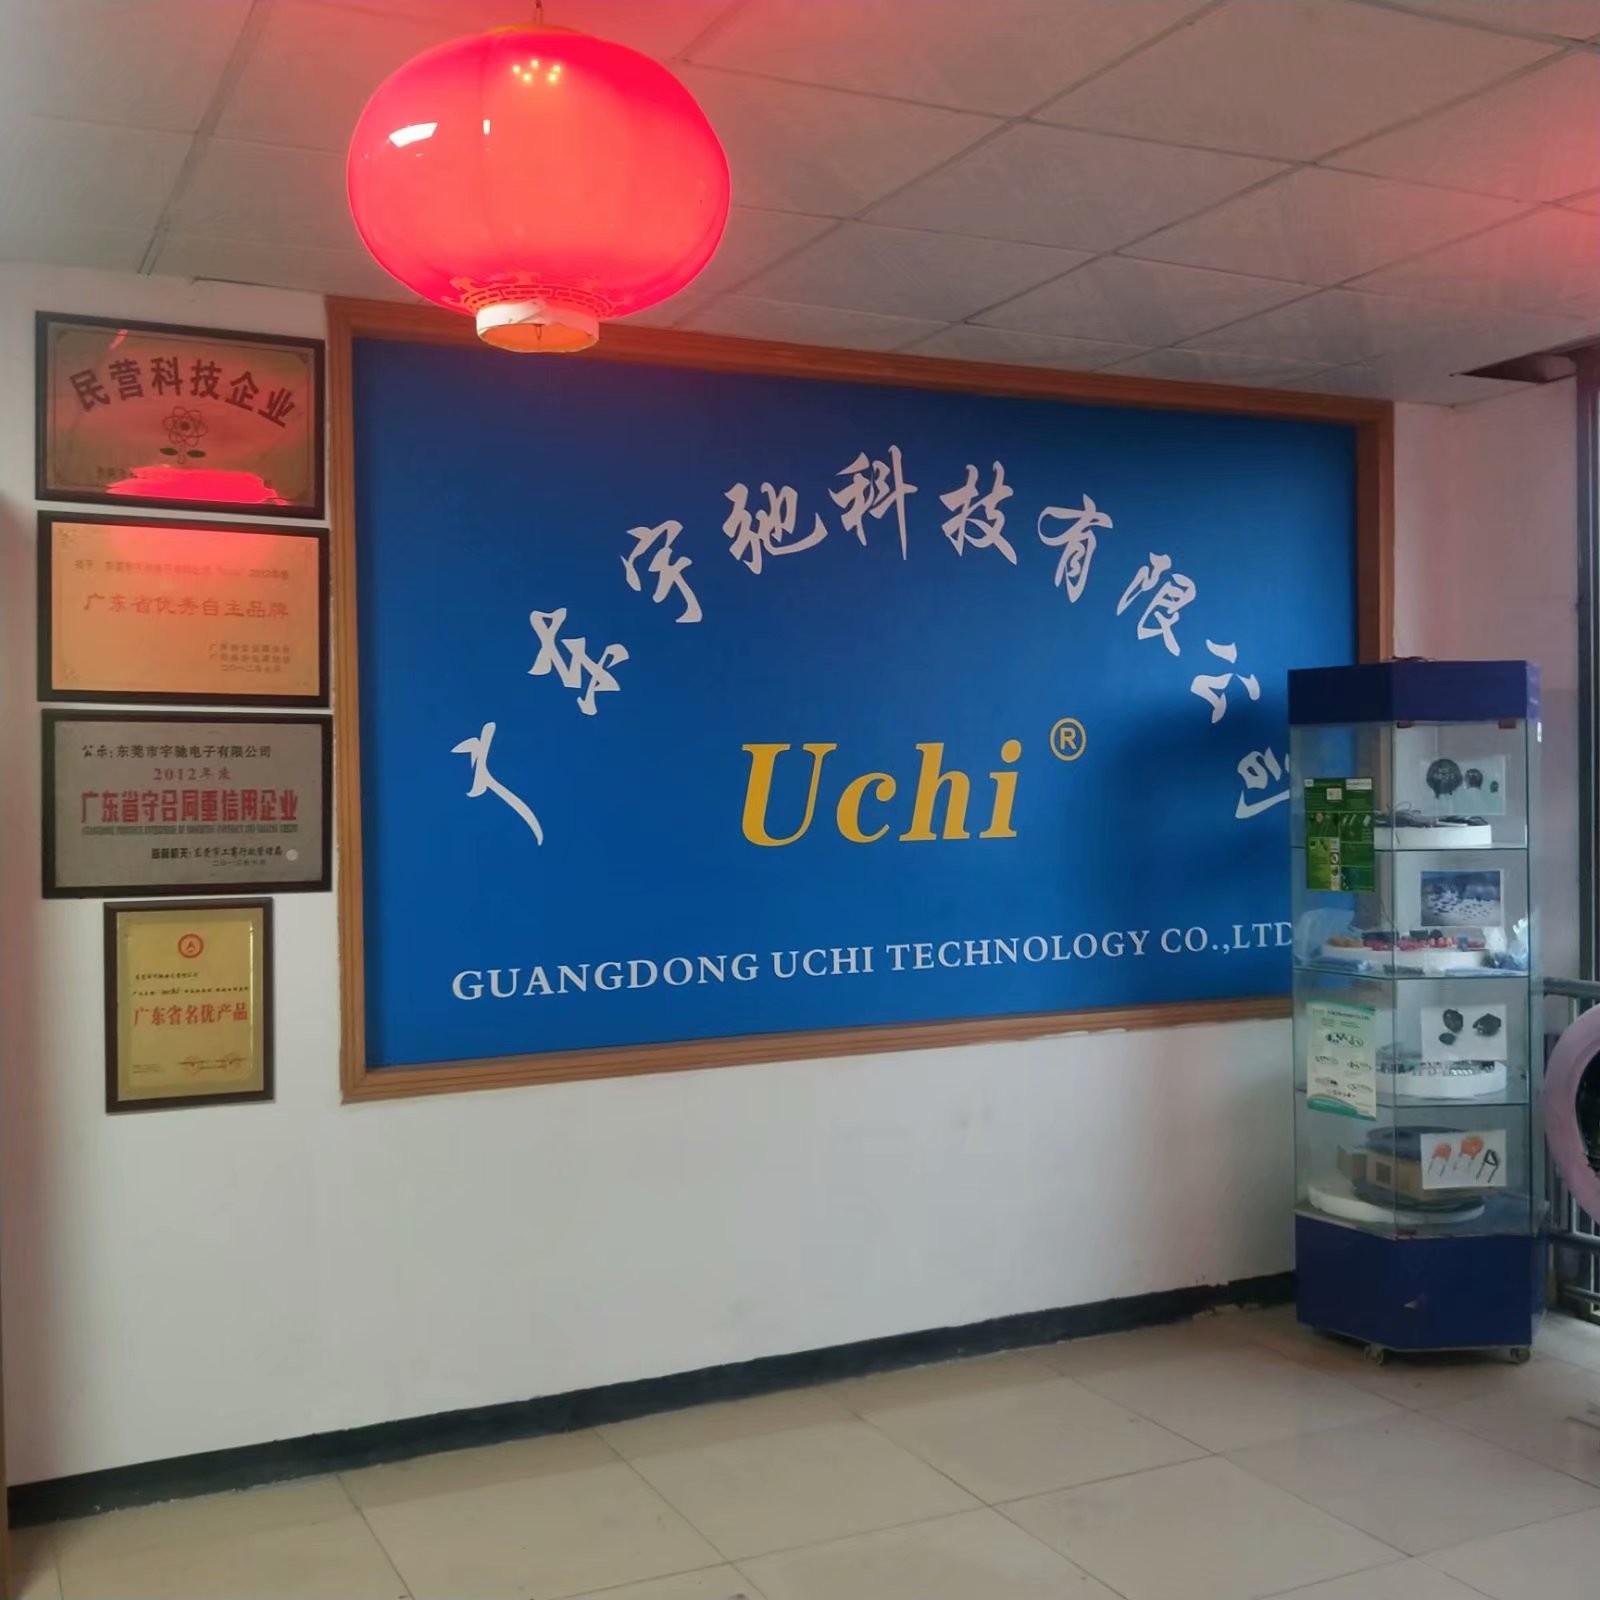 Chiny Guangdong Uchi Technology Co.,Ltd